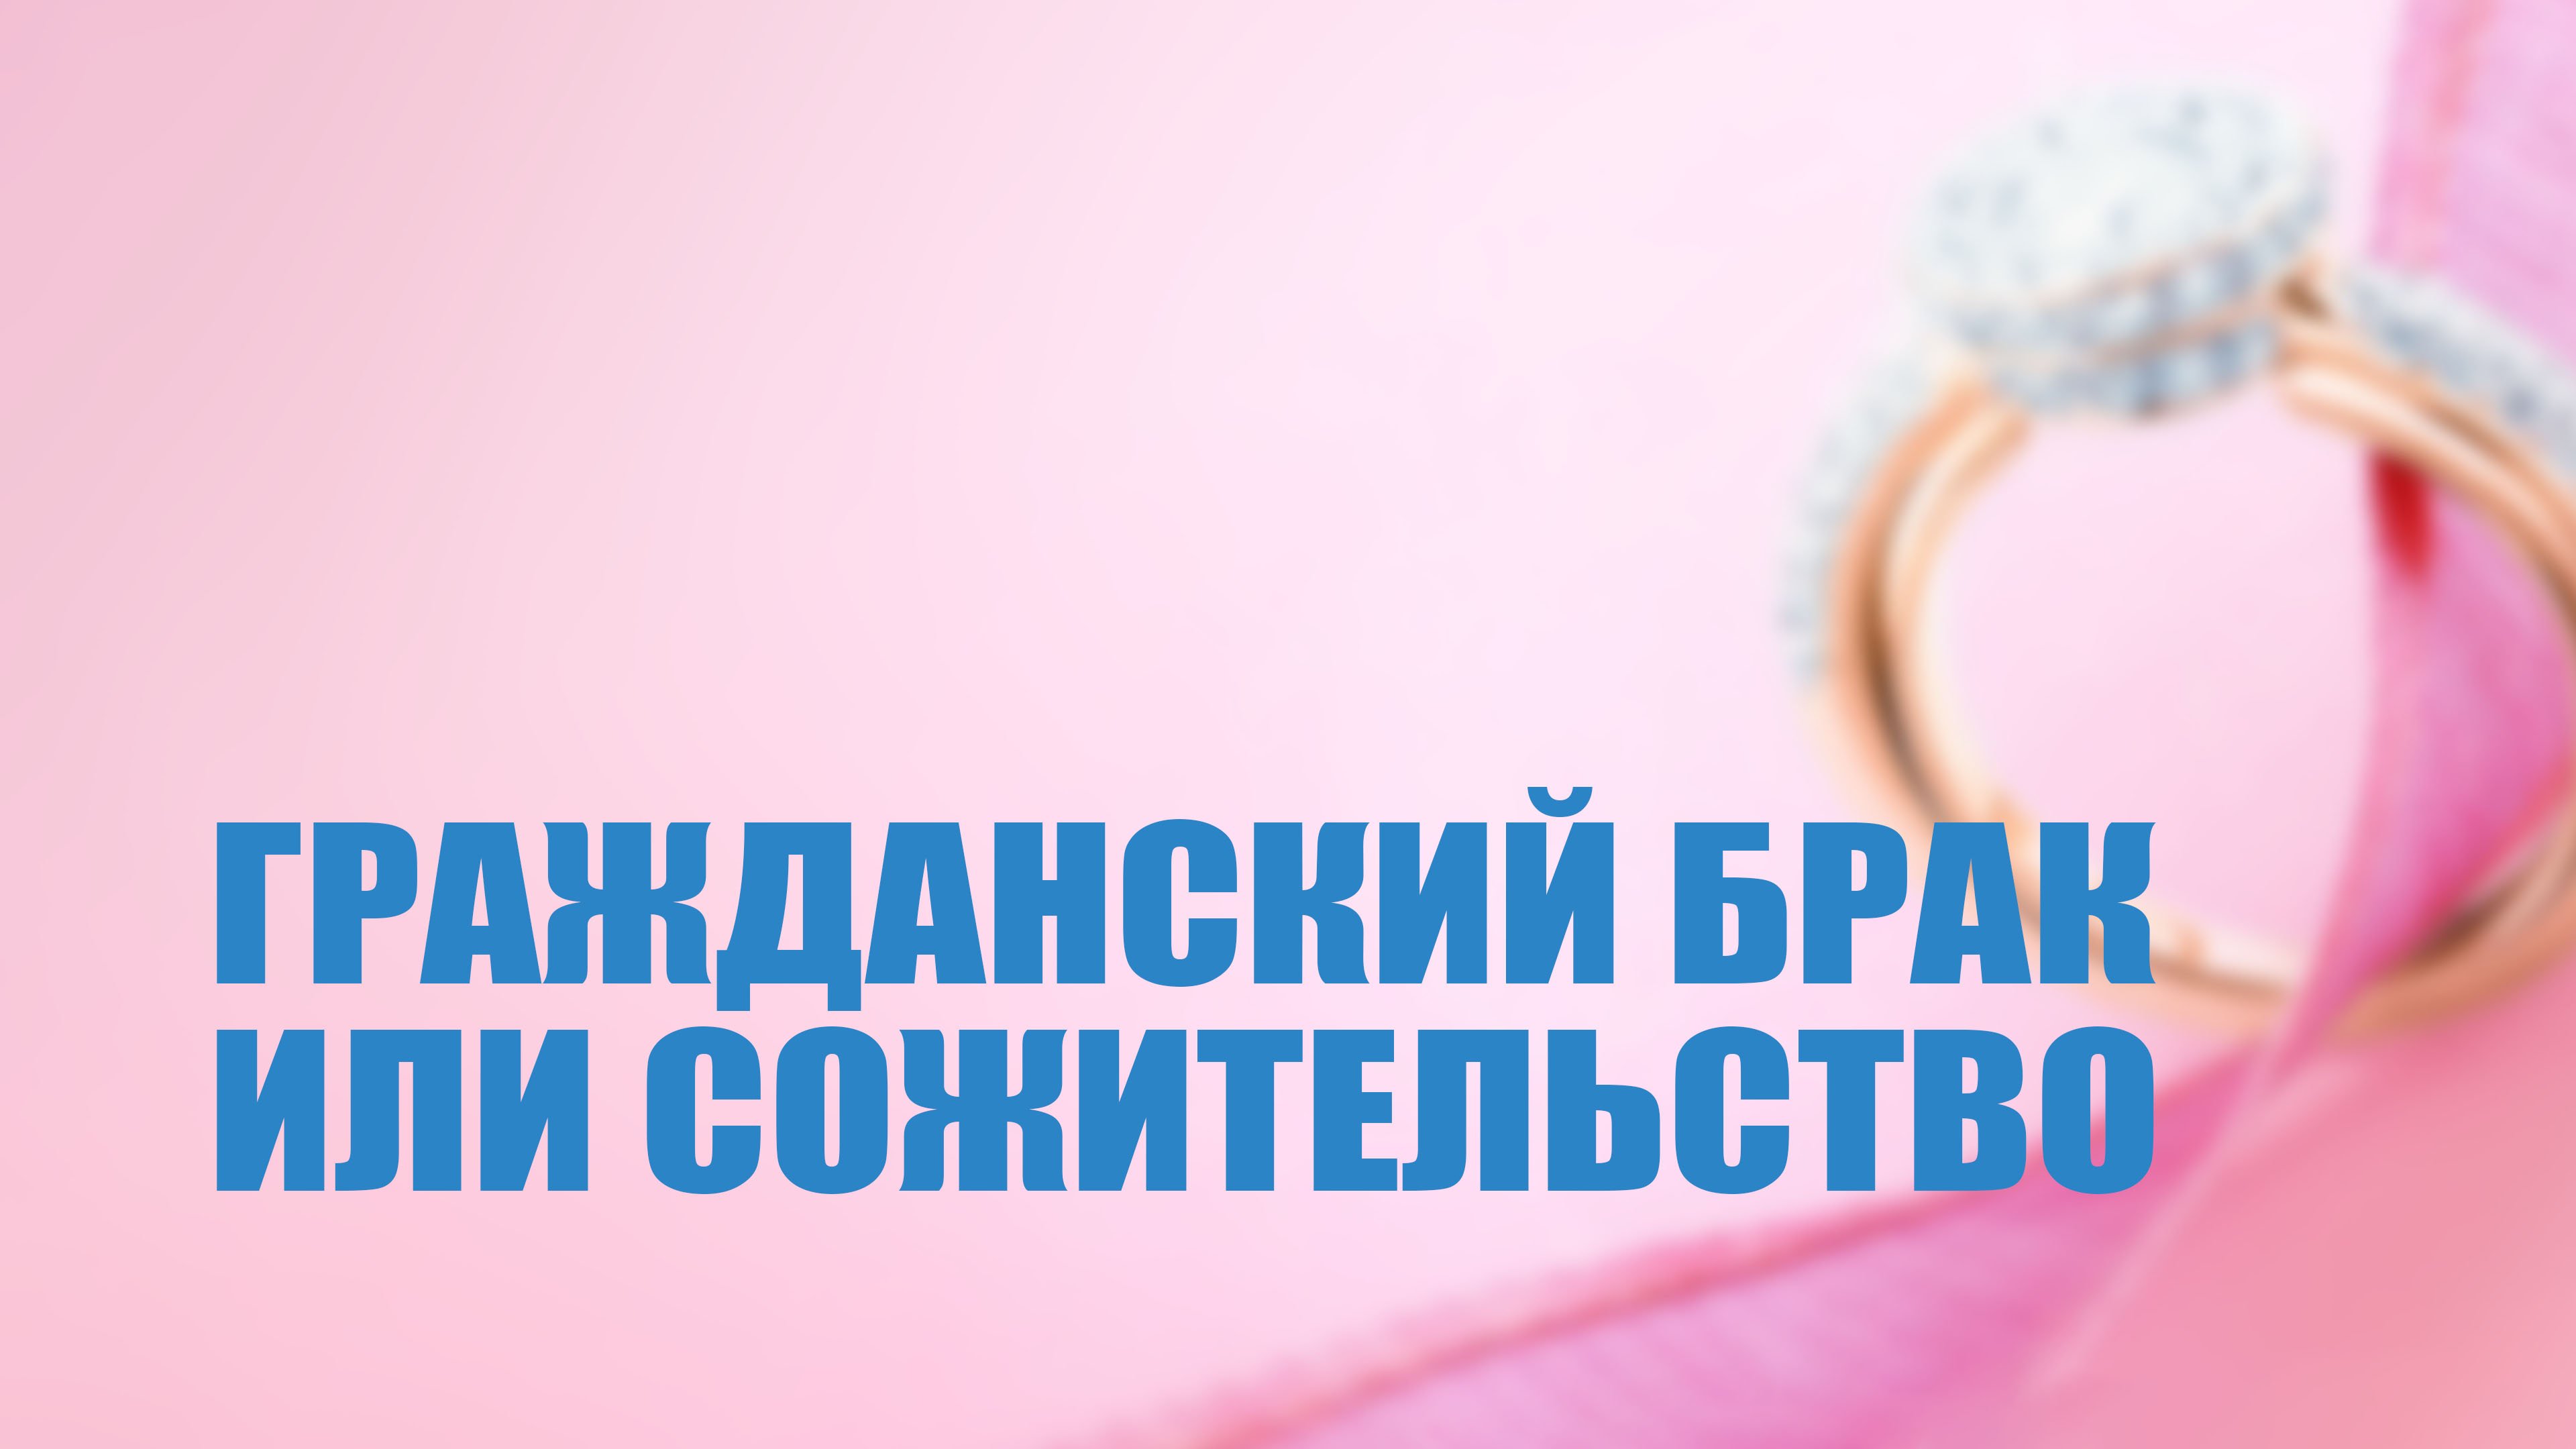 TVS PT204 Rus 5.  Гражданский брак   или сожительство